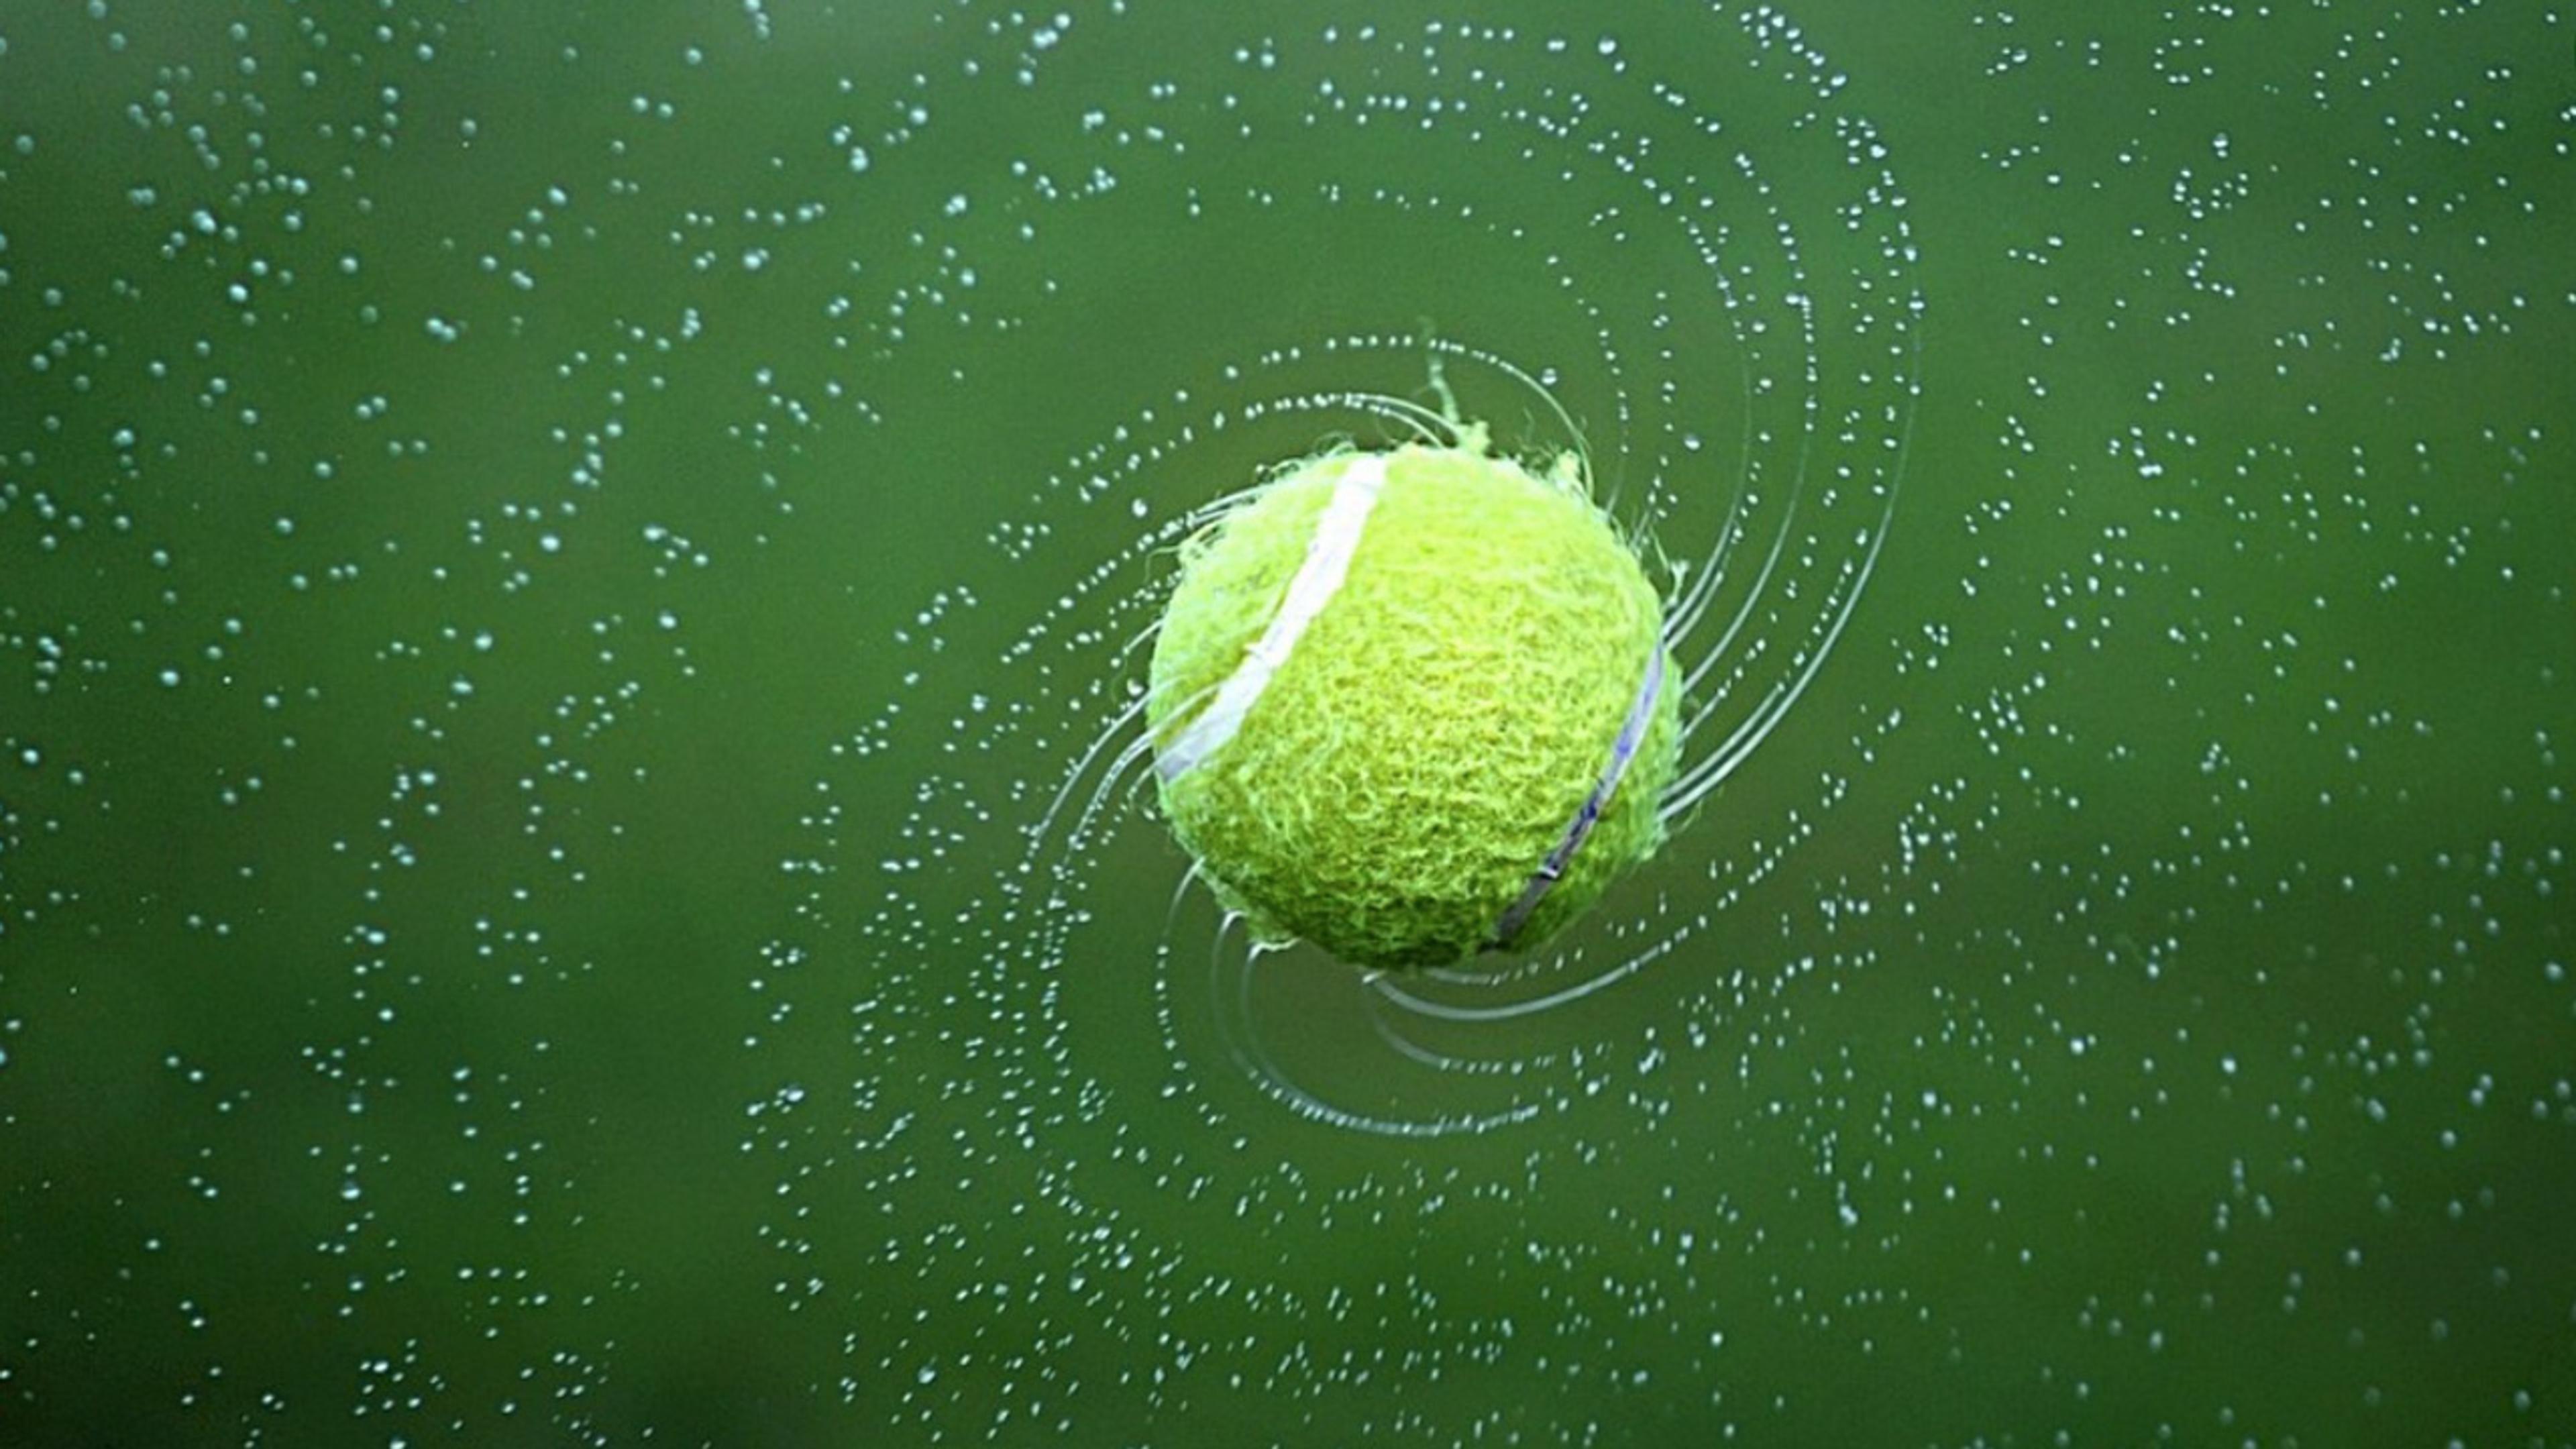 Tennisball som spinner rundt i luften mens vannet fosser av den.